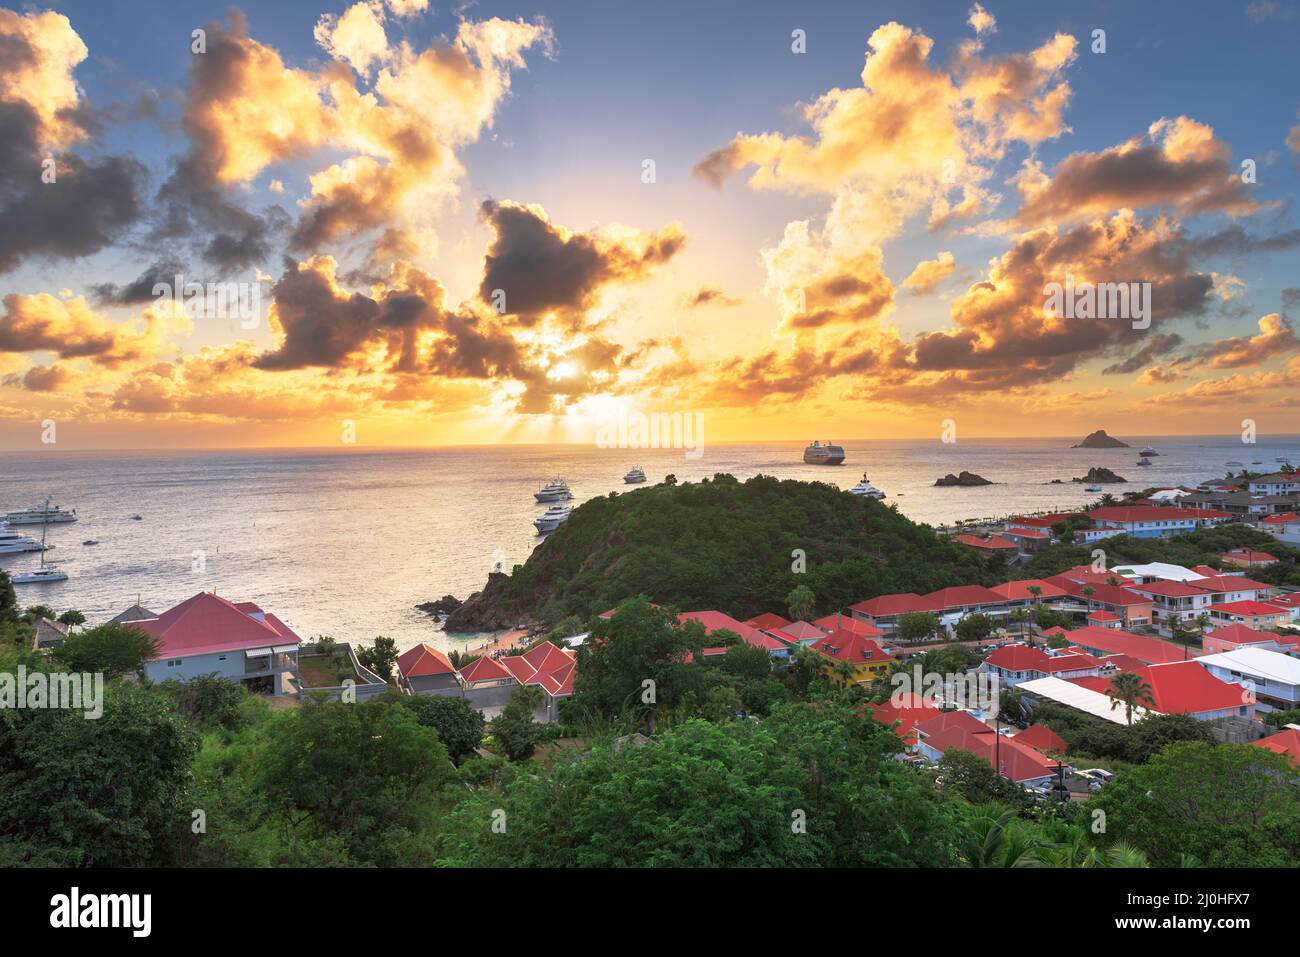 Gustavia, côte de St Barts dans les Antilles de la mer des Caraïbes au coucher du soleil. Banque D'Images